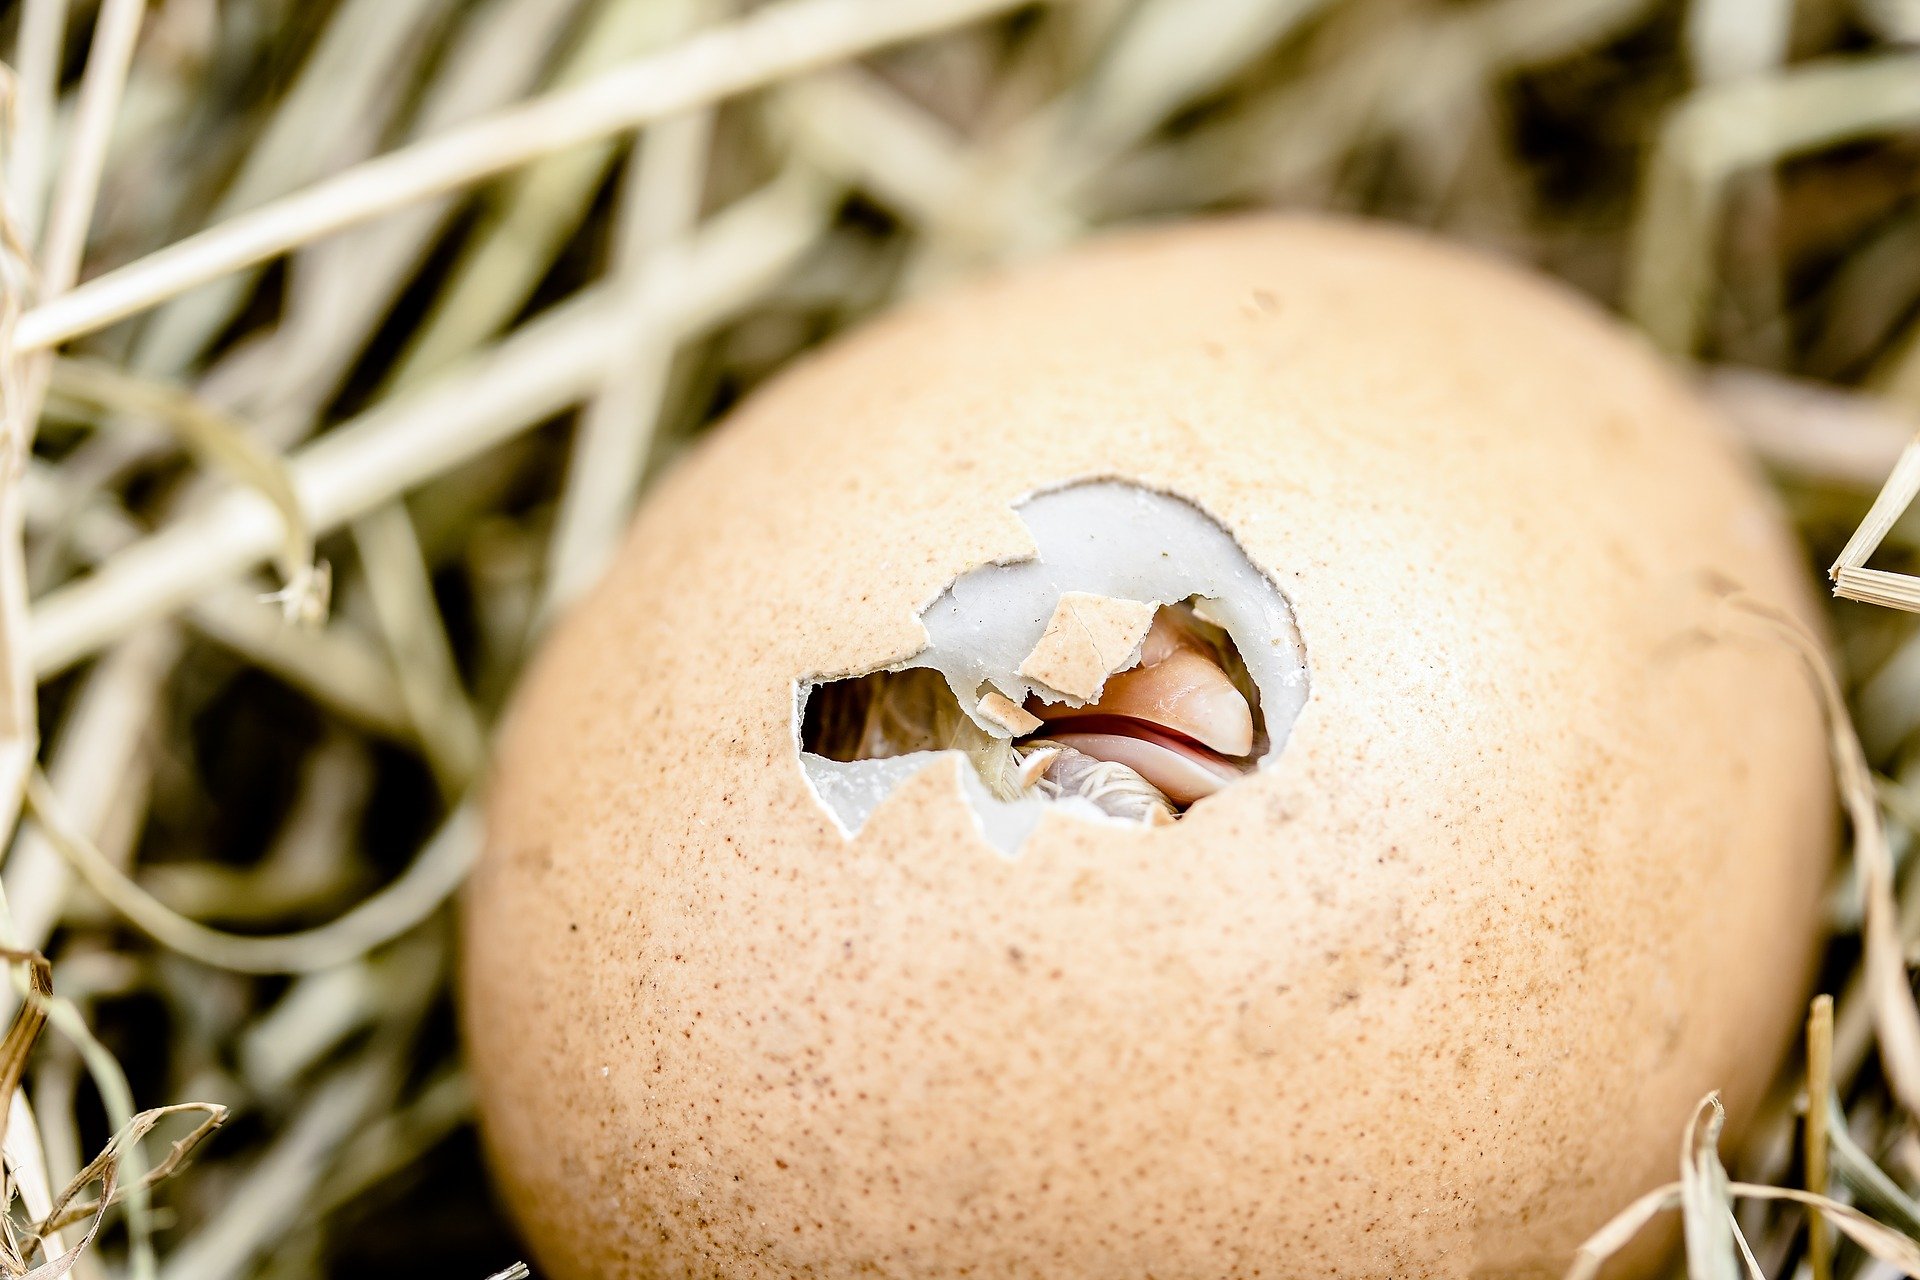 Comment savoir si un œuf de poule est fécondé ?